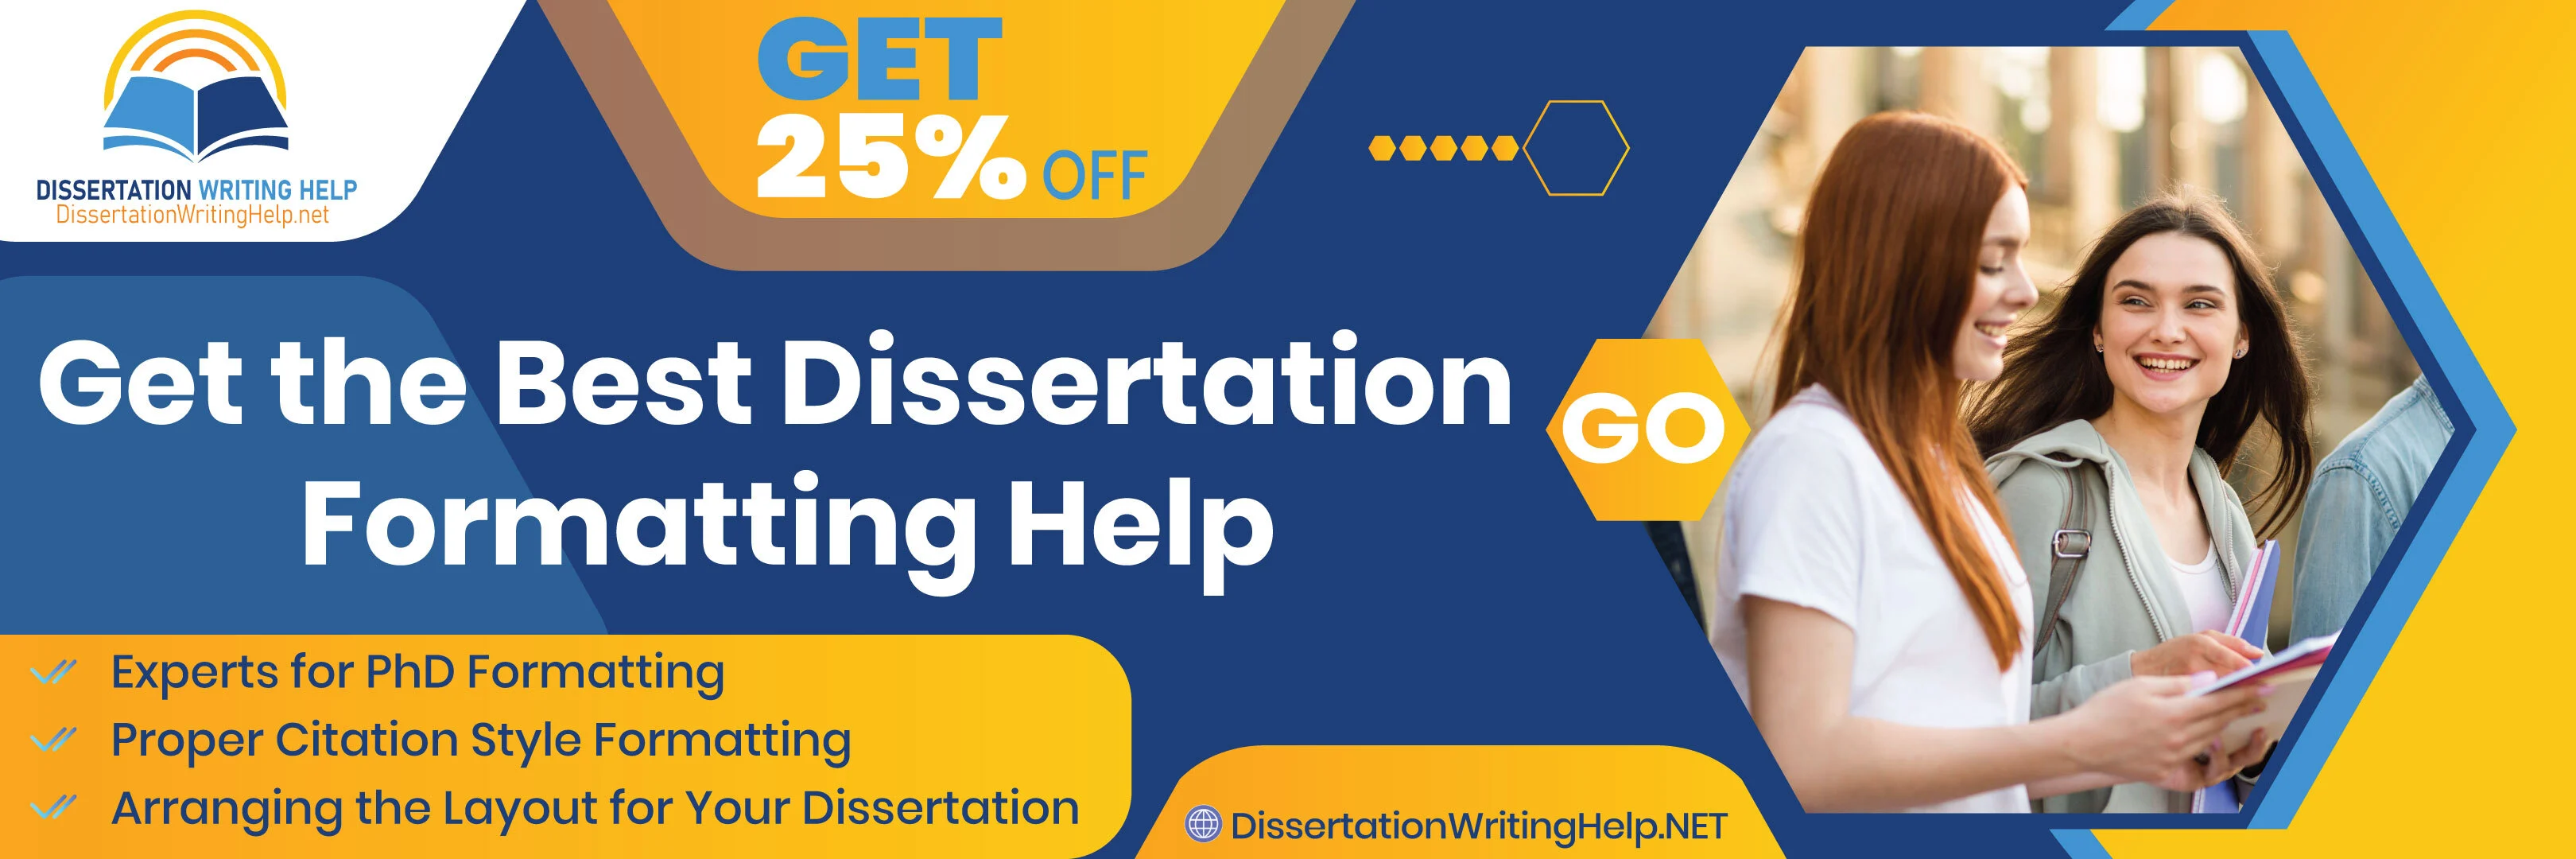 Get the best dissertation formatting help